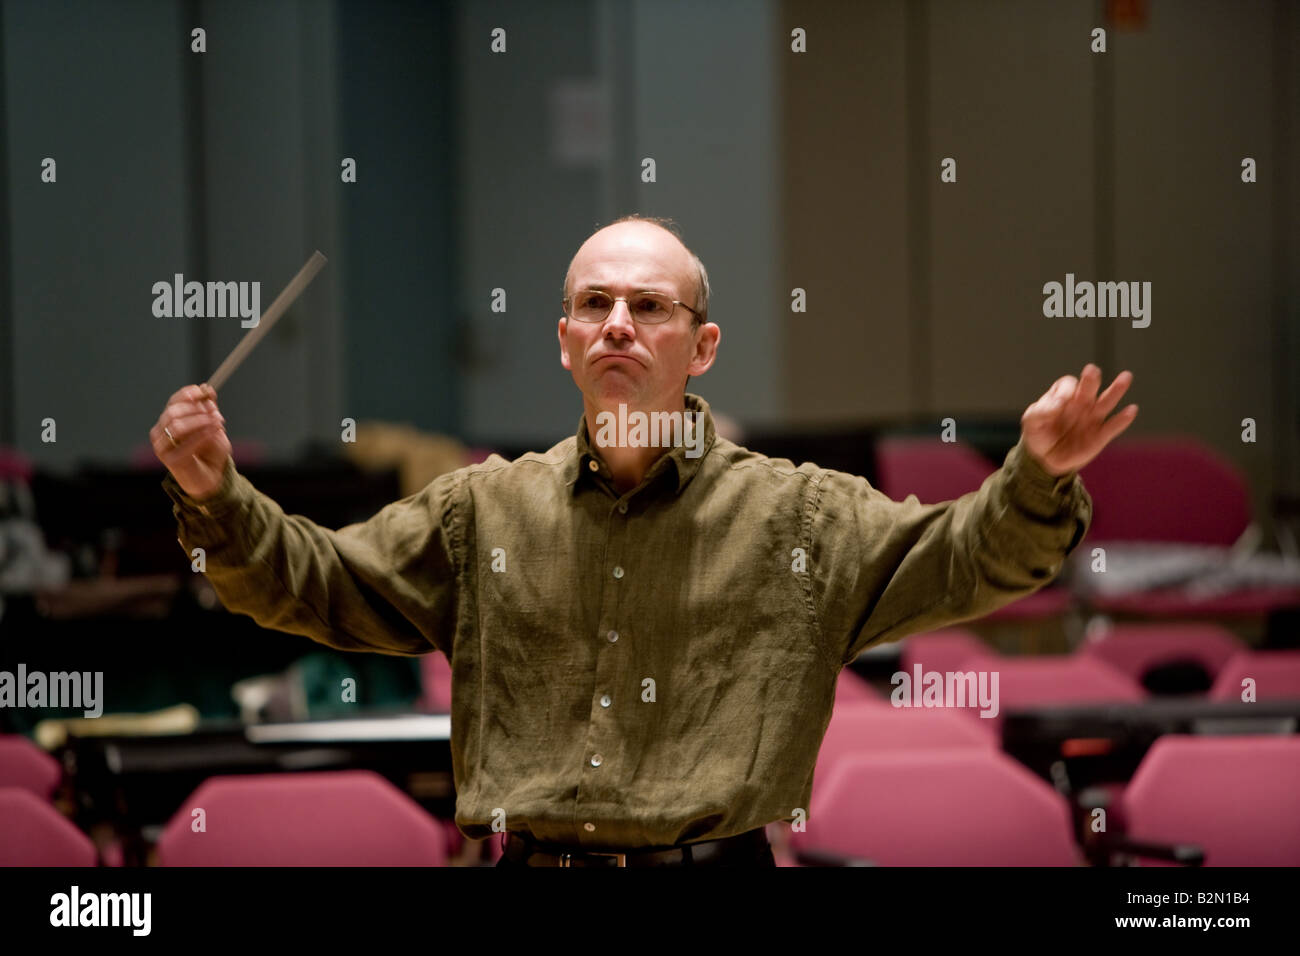 The conductor Professor Ruediger Bohn at work. Stock Photo